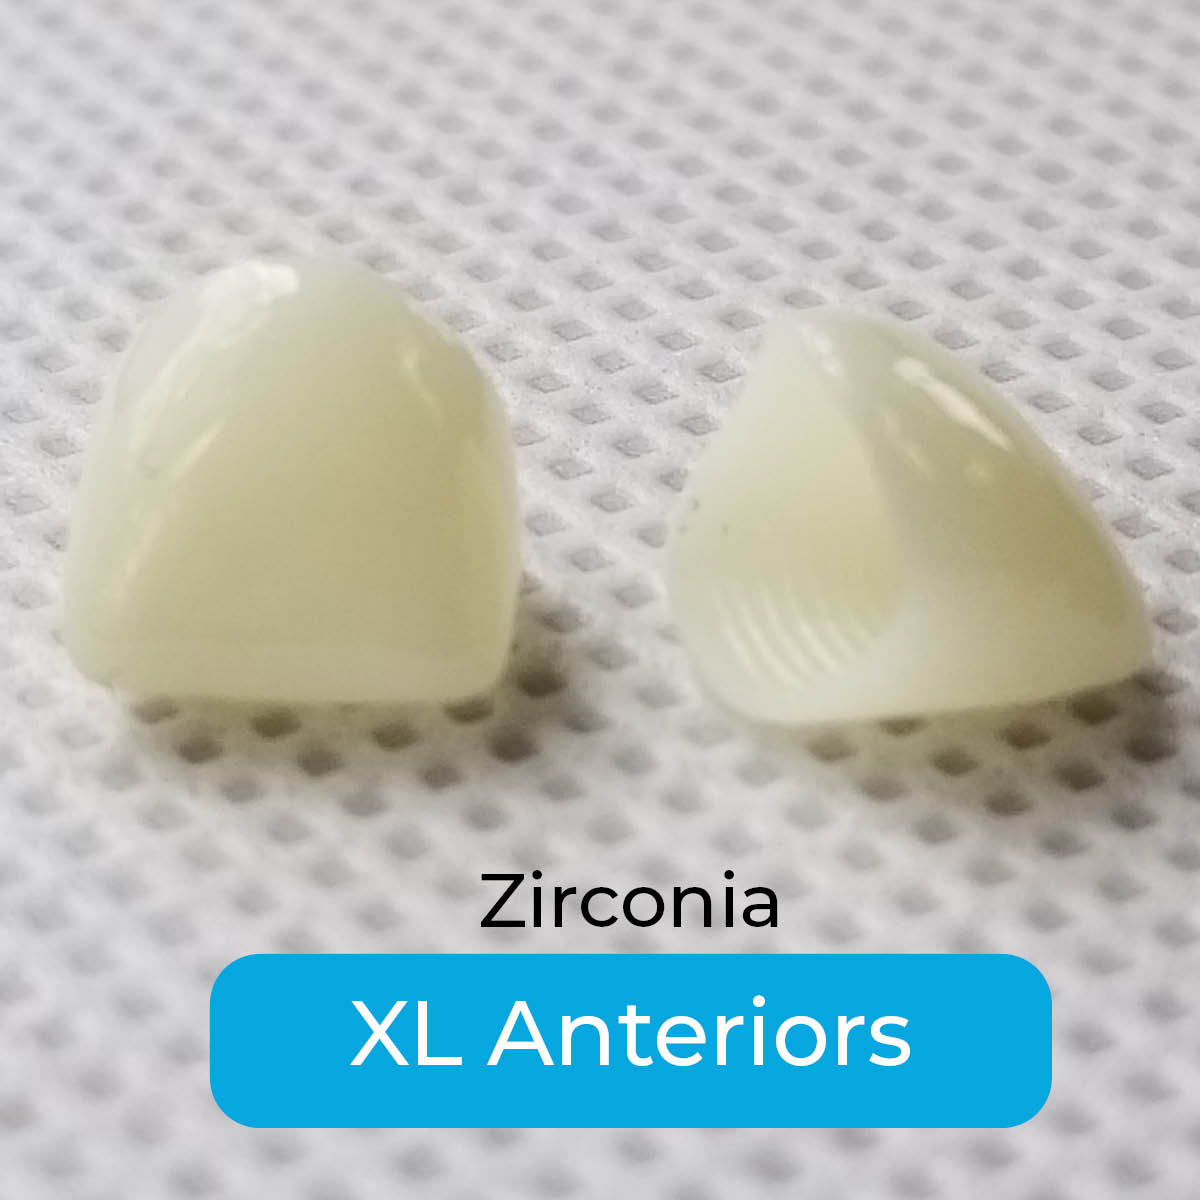 Zirconia XL Anteriors